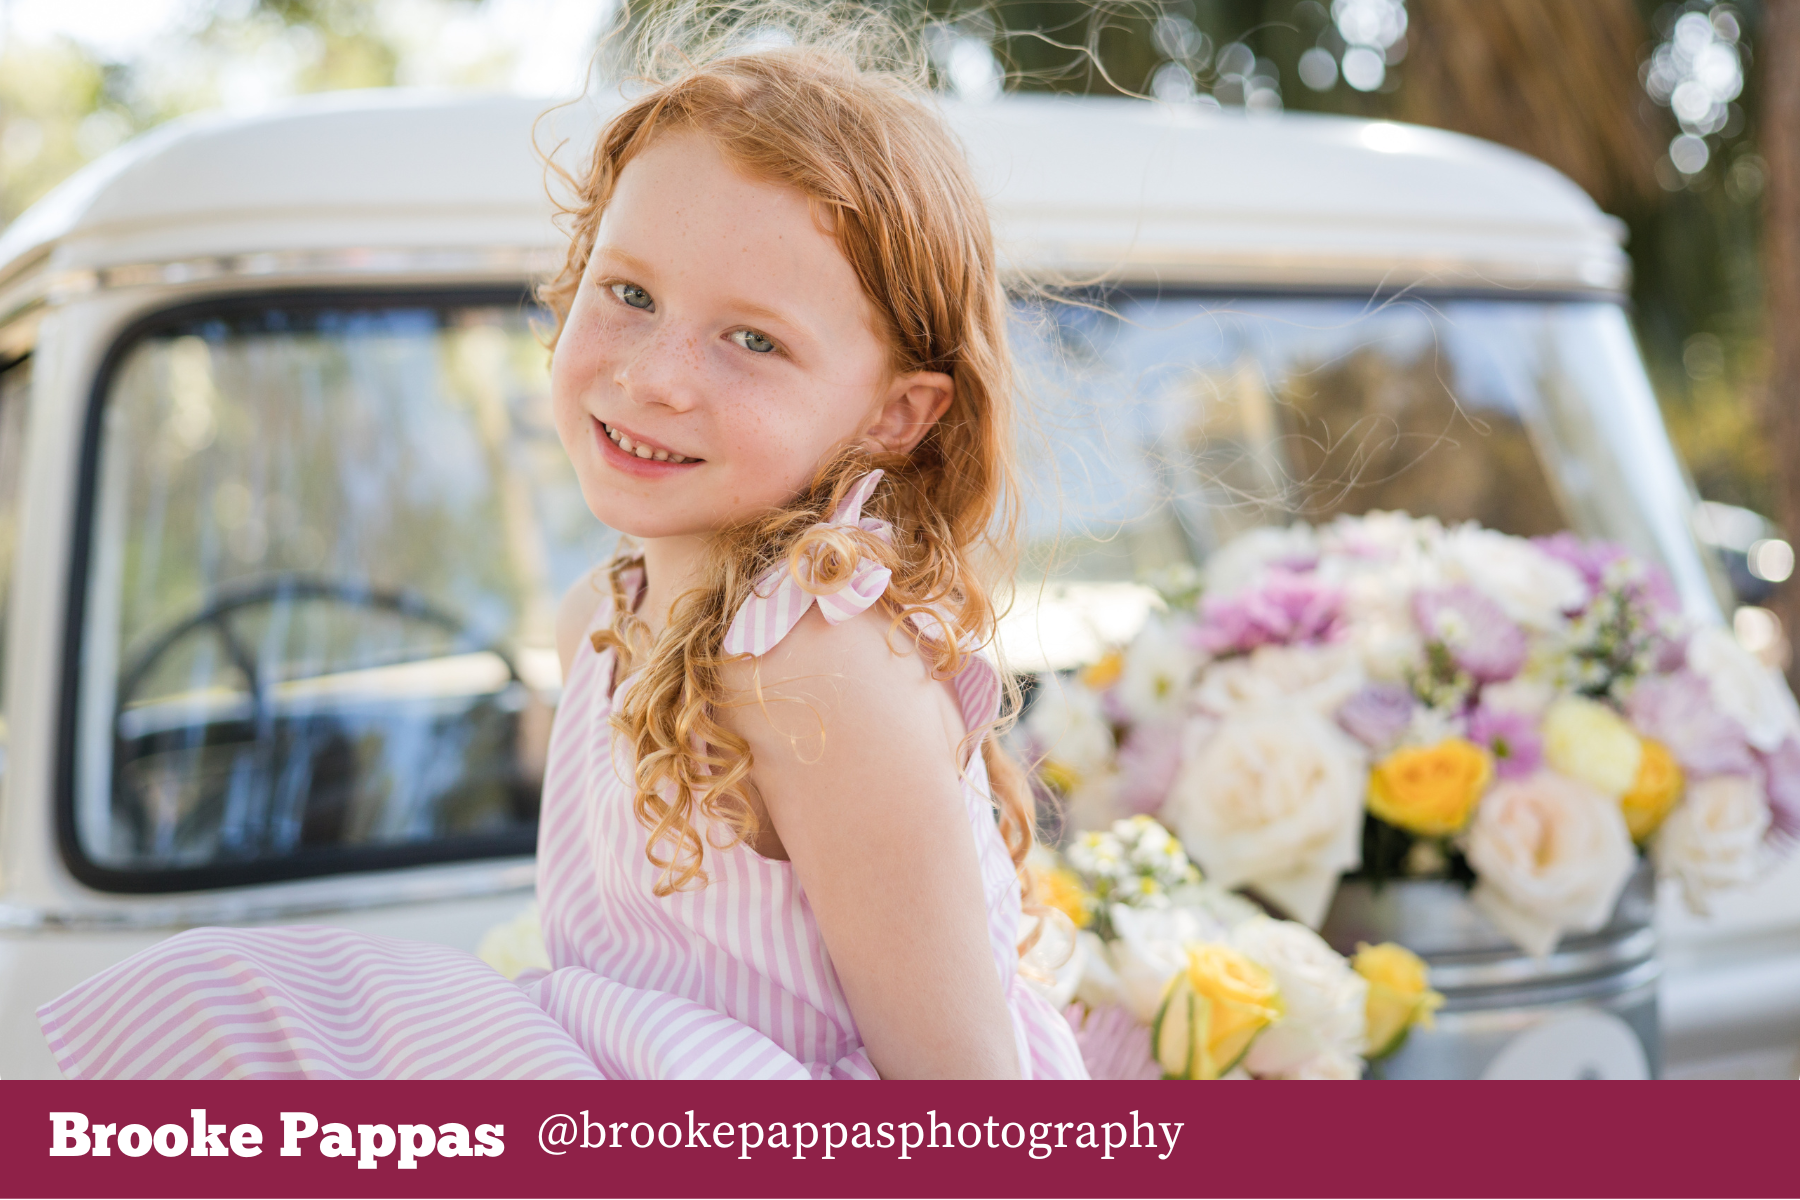 April VIP Photo Contest - Brooke Pappas